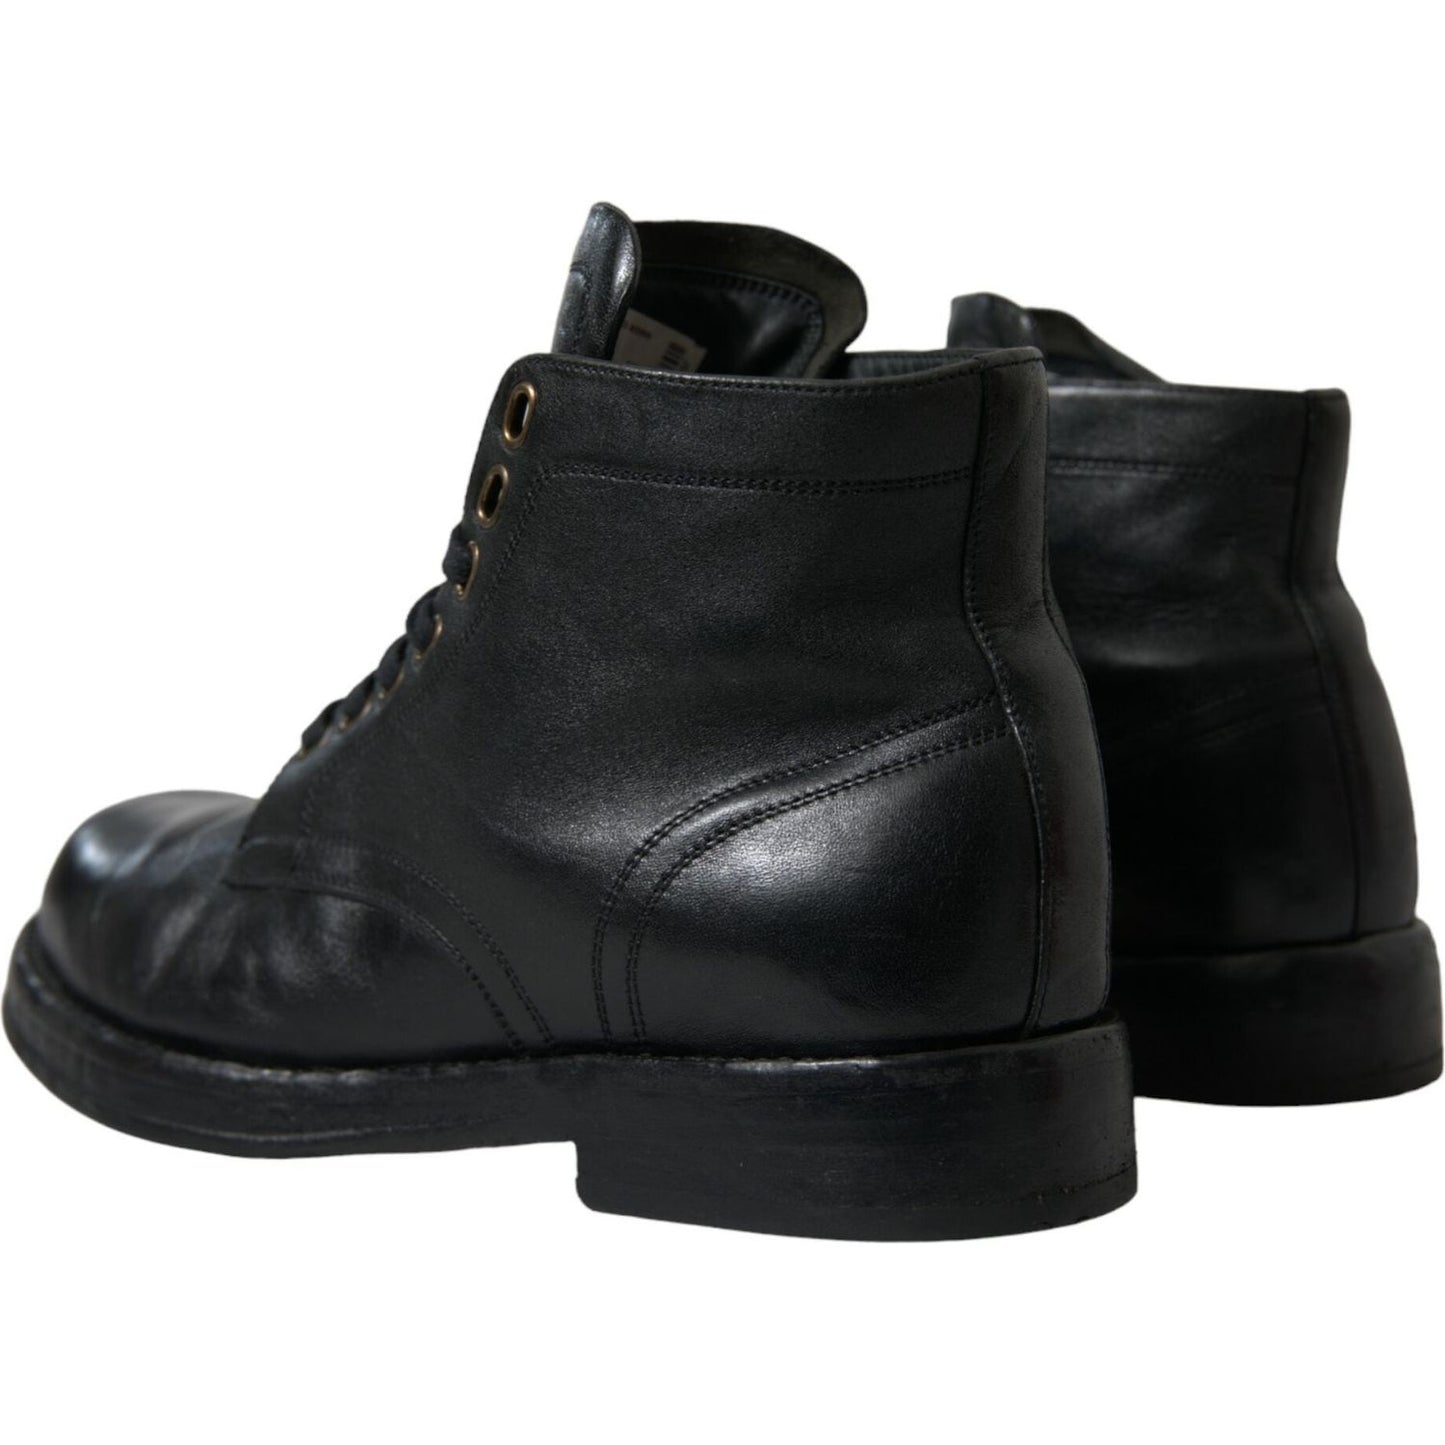 Dolce & Gabbana | Elegant Black Horse Leather Ankle Boots| McRichard Designer Brands   